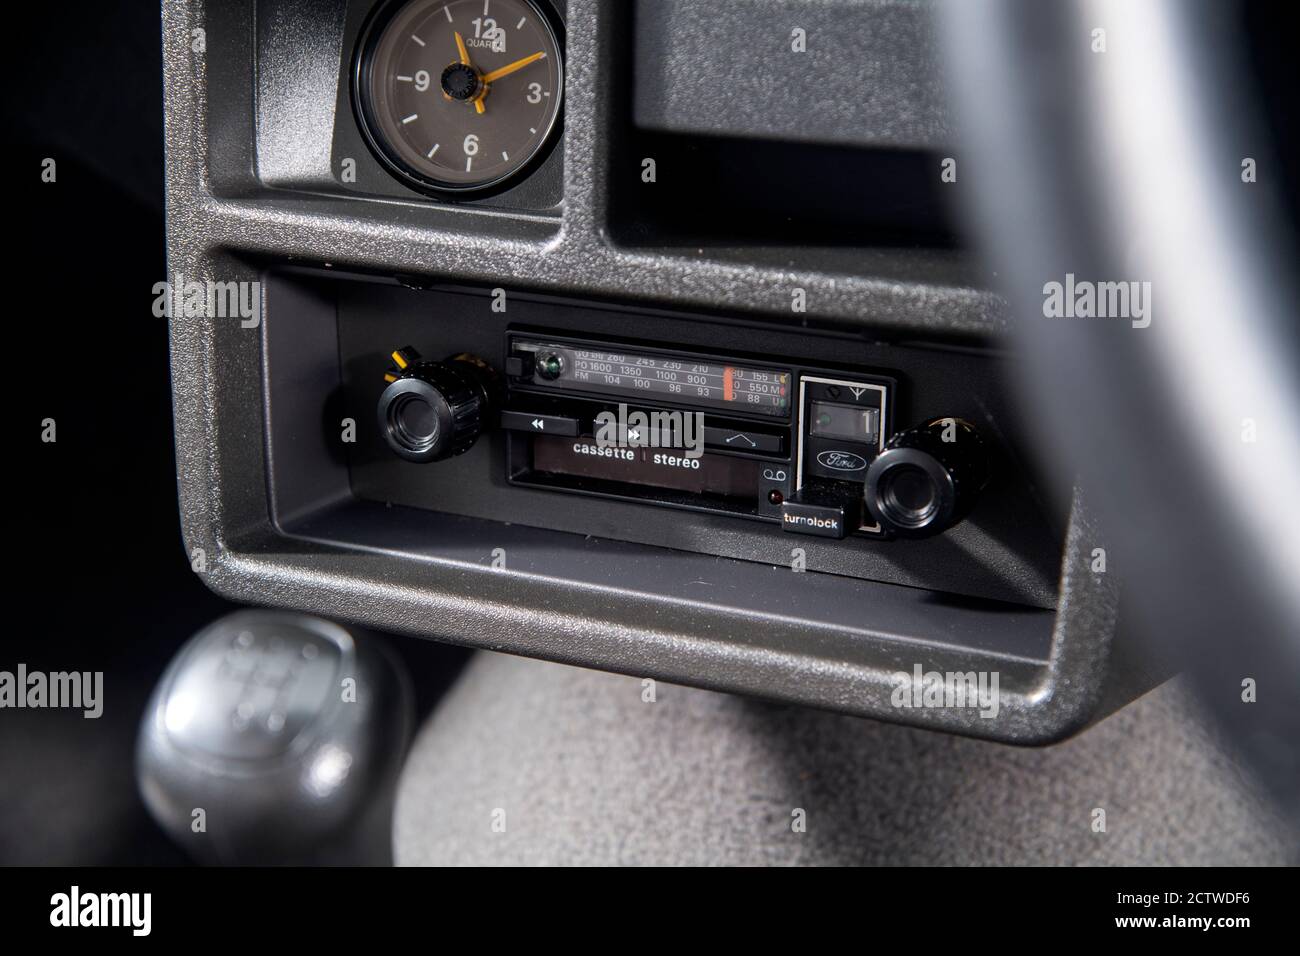 Car cassette player -Fotos und -Bildmaterial in hoher Auflösung – Alamy